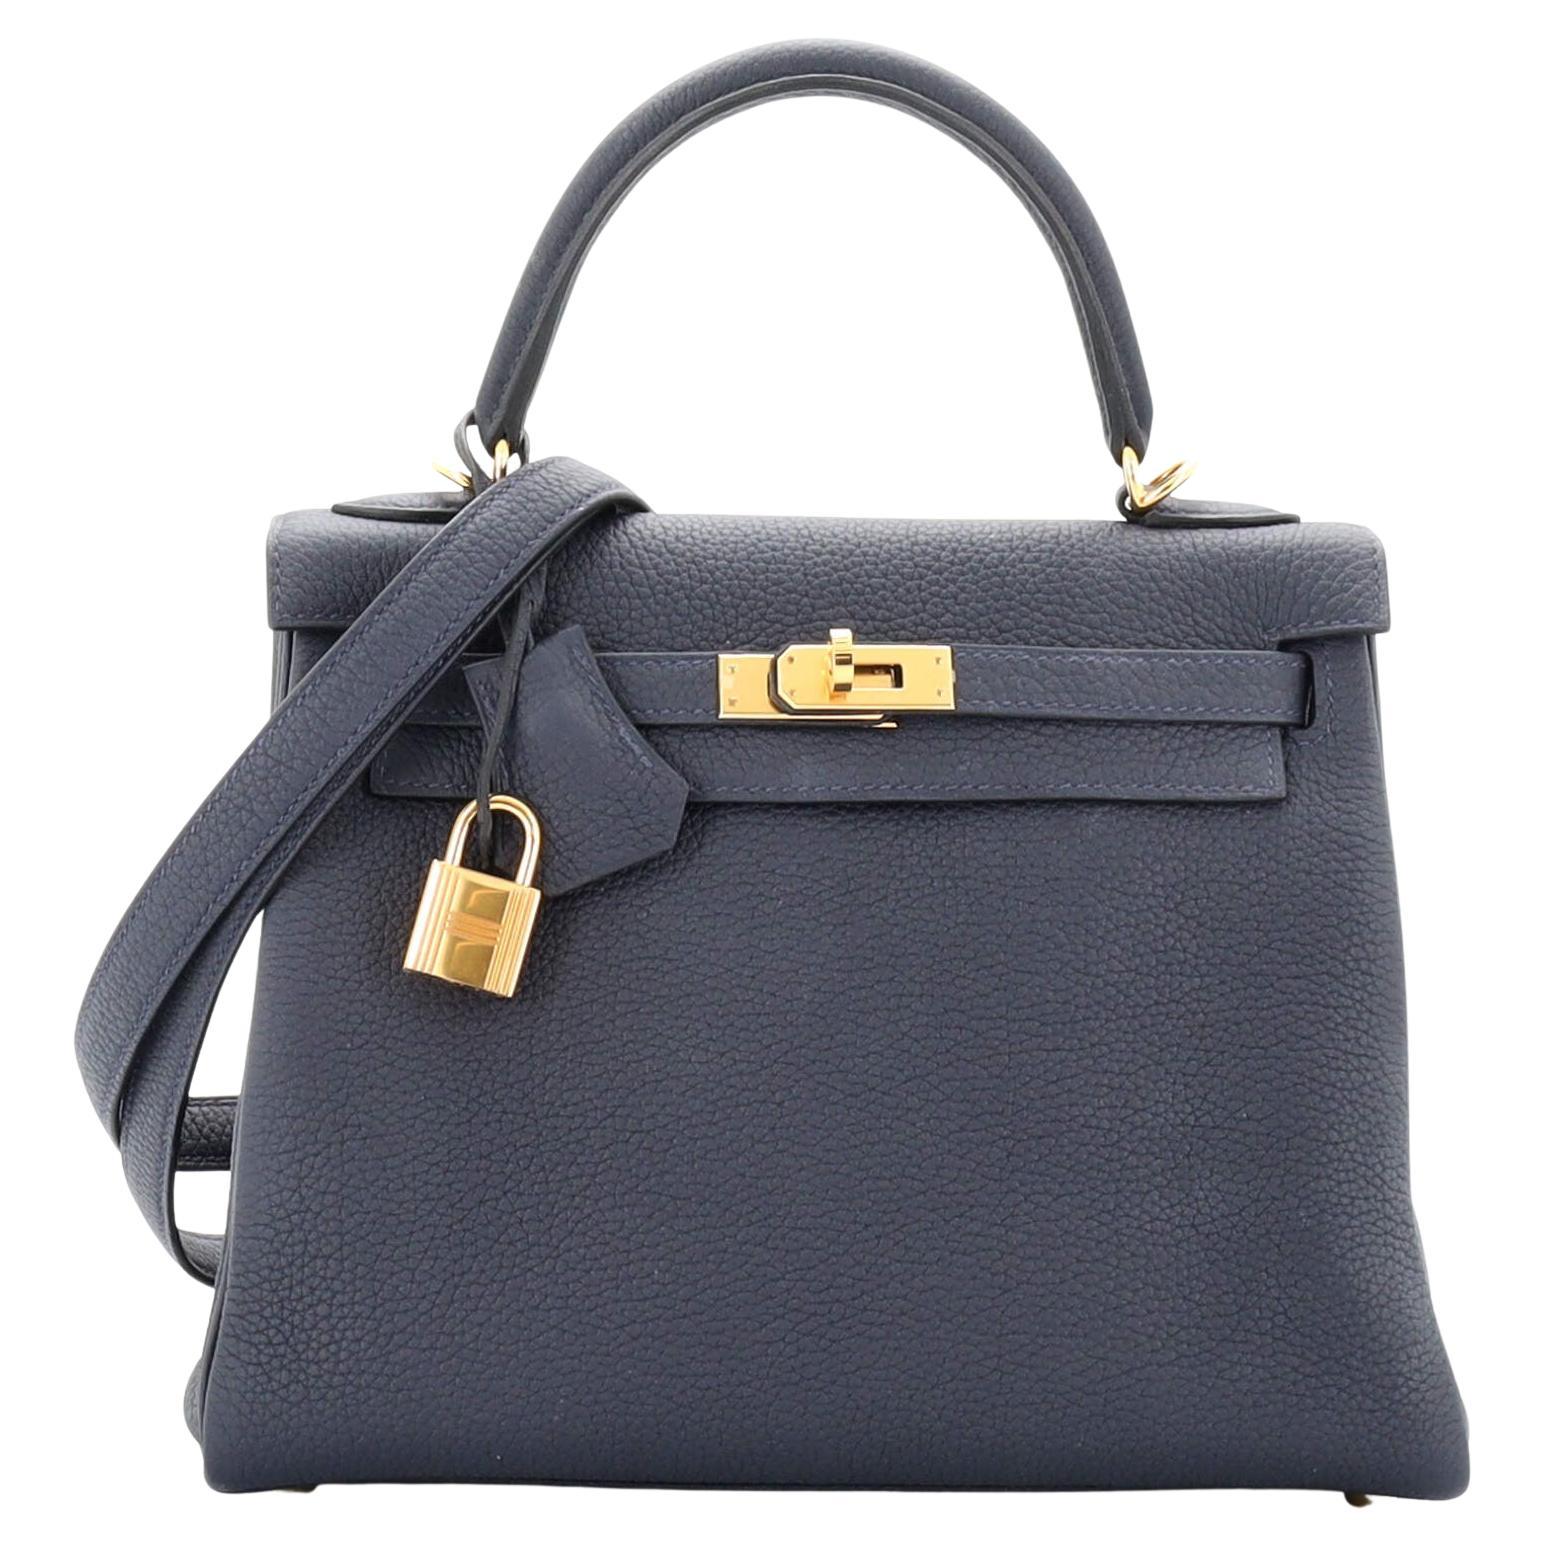 Hermes Kelly Handbag Bleu Nuit Togo with Gold Hardware 25